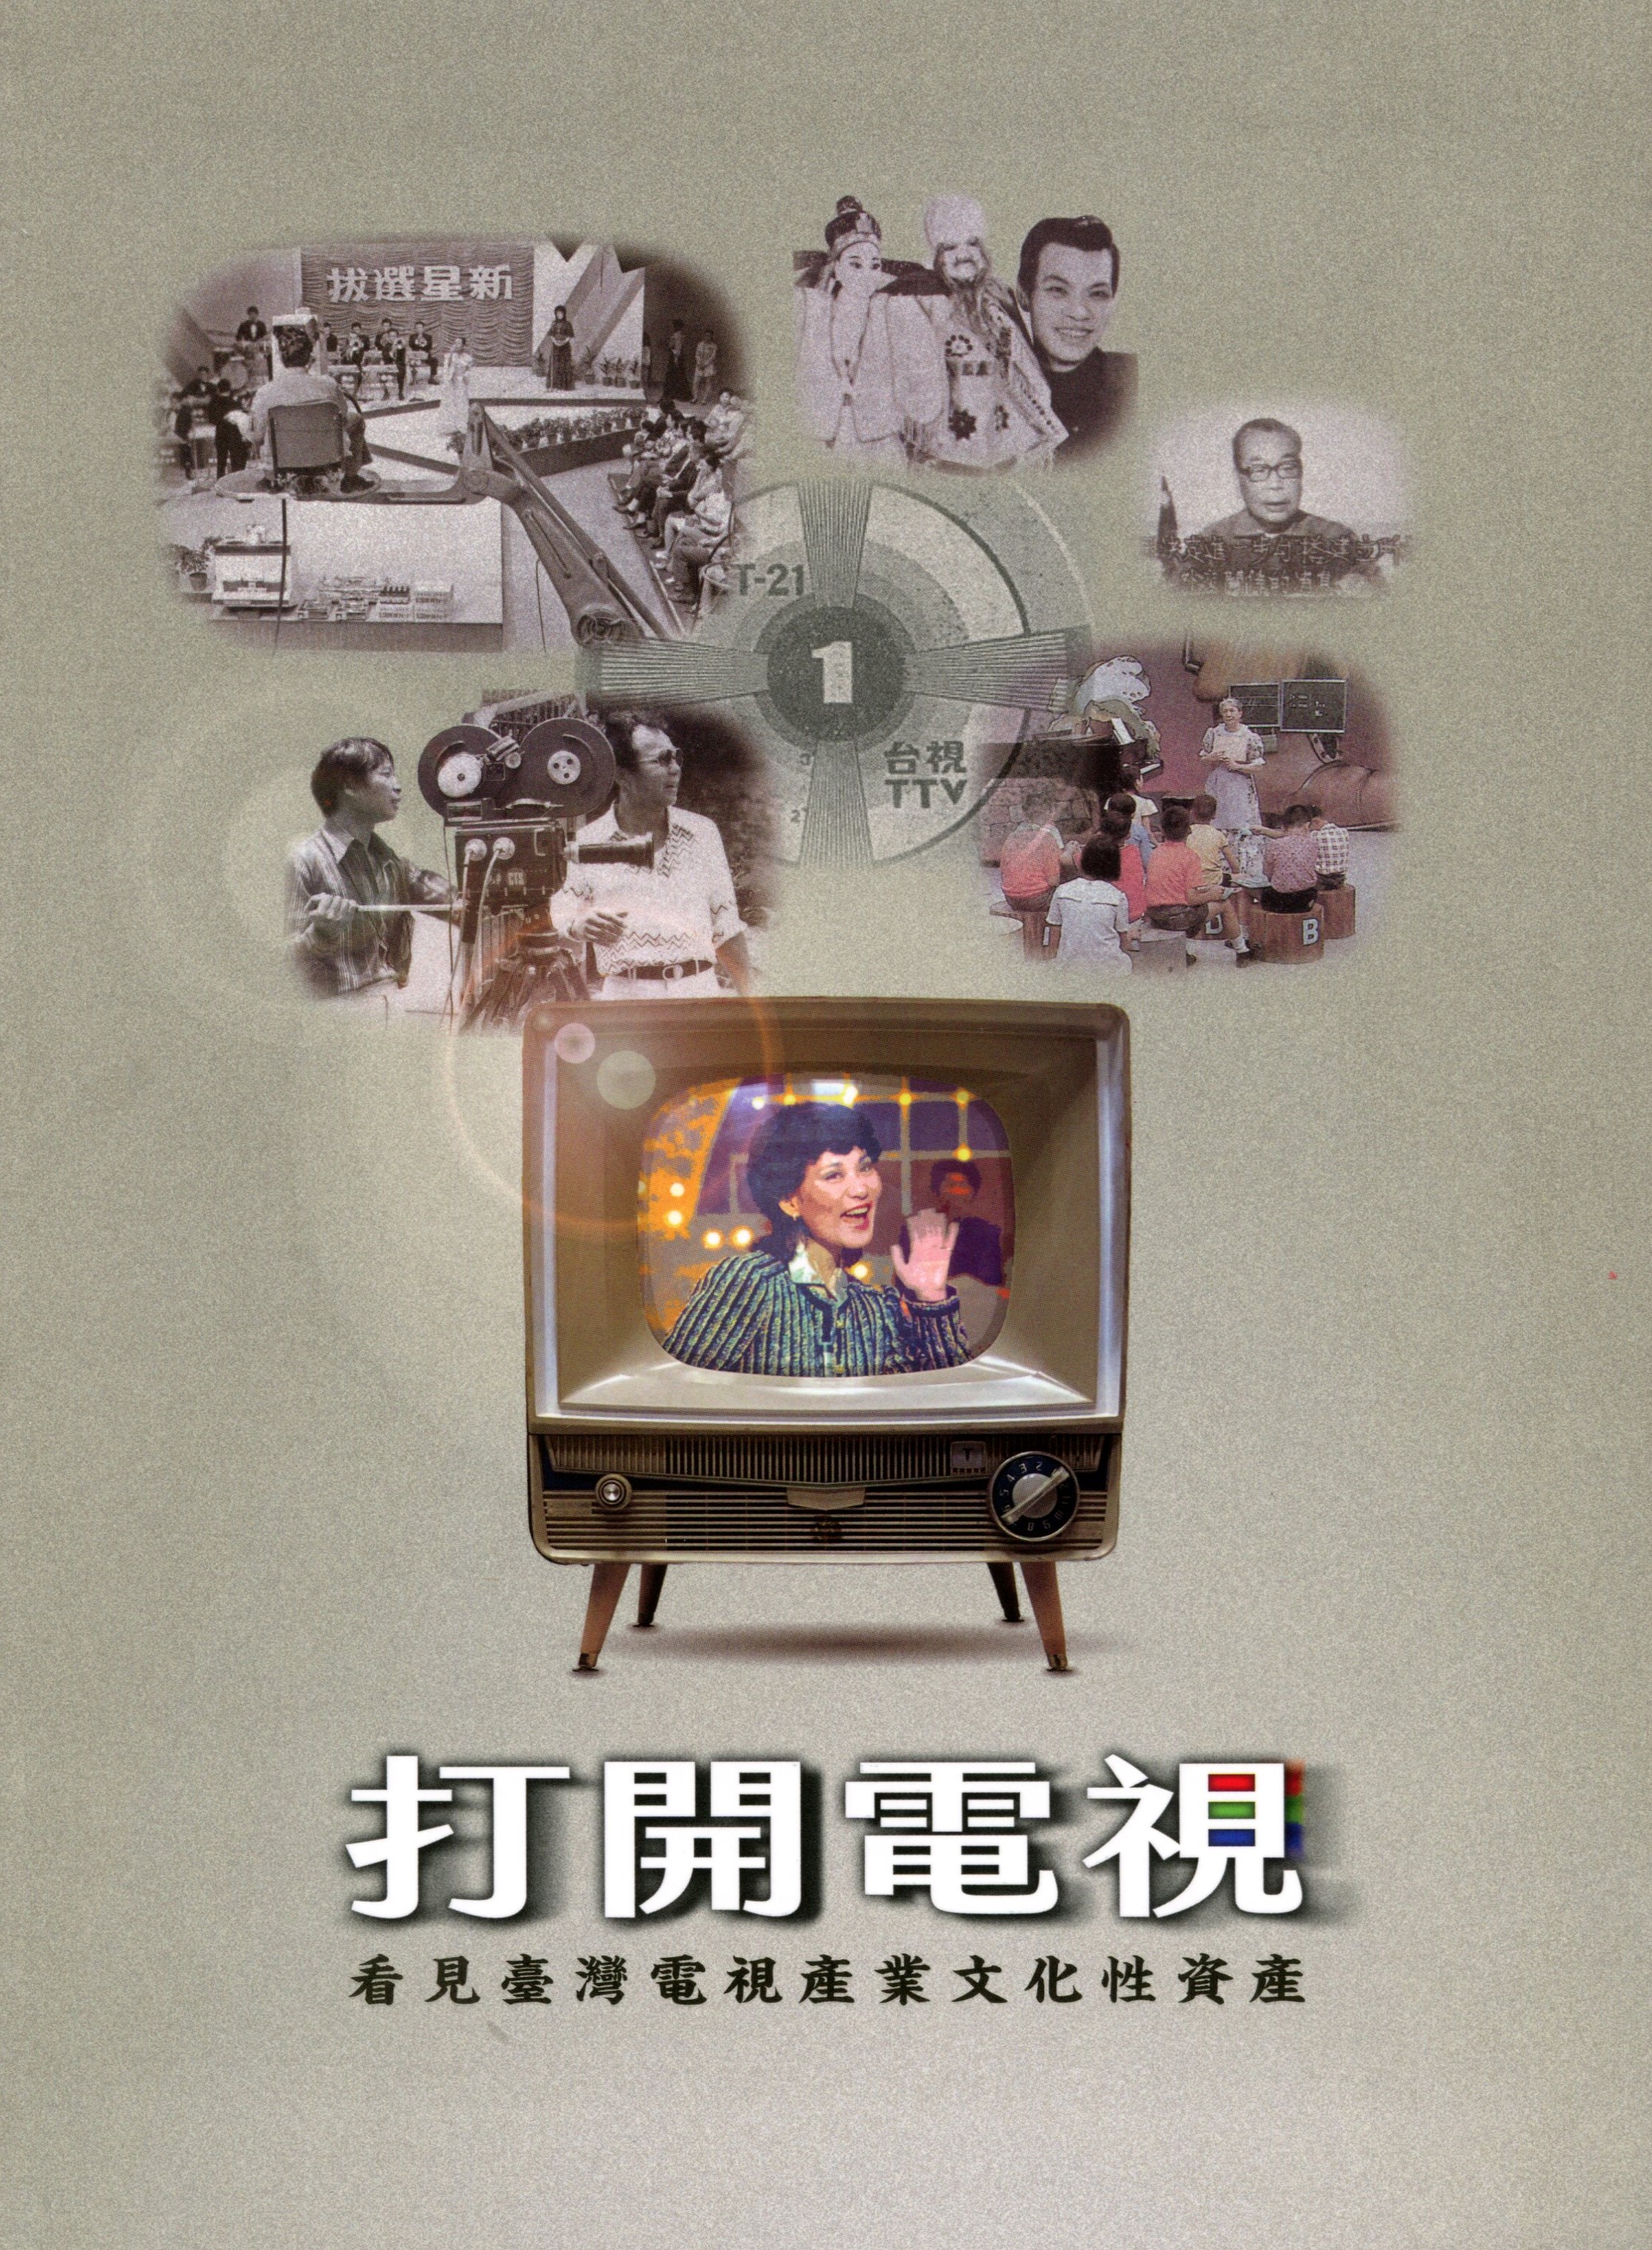 打開電視─看見臺灣電視產業文化性資產